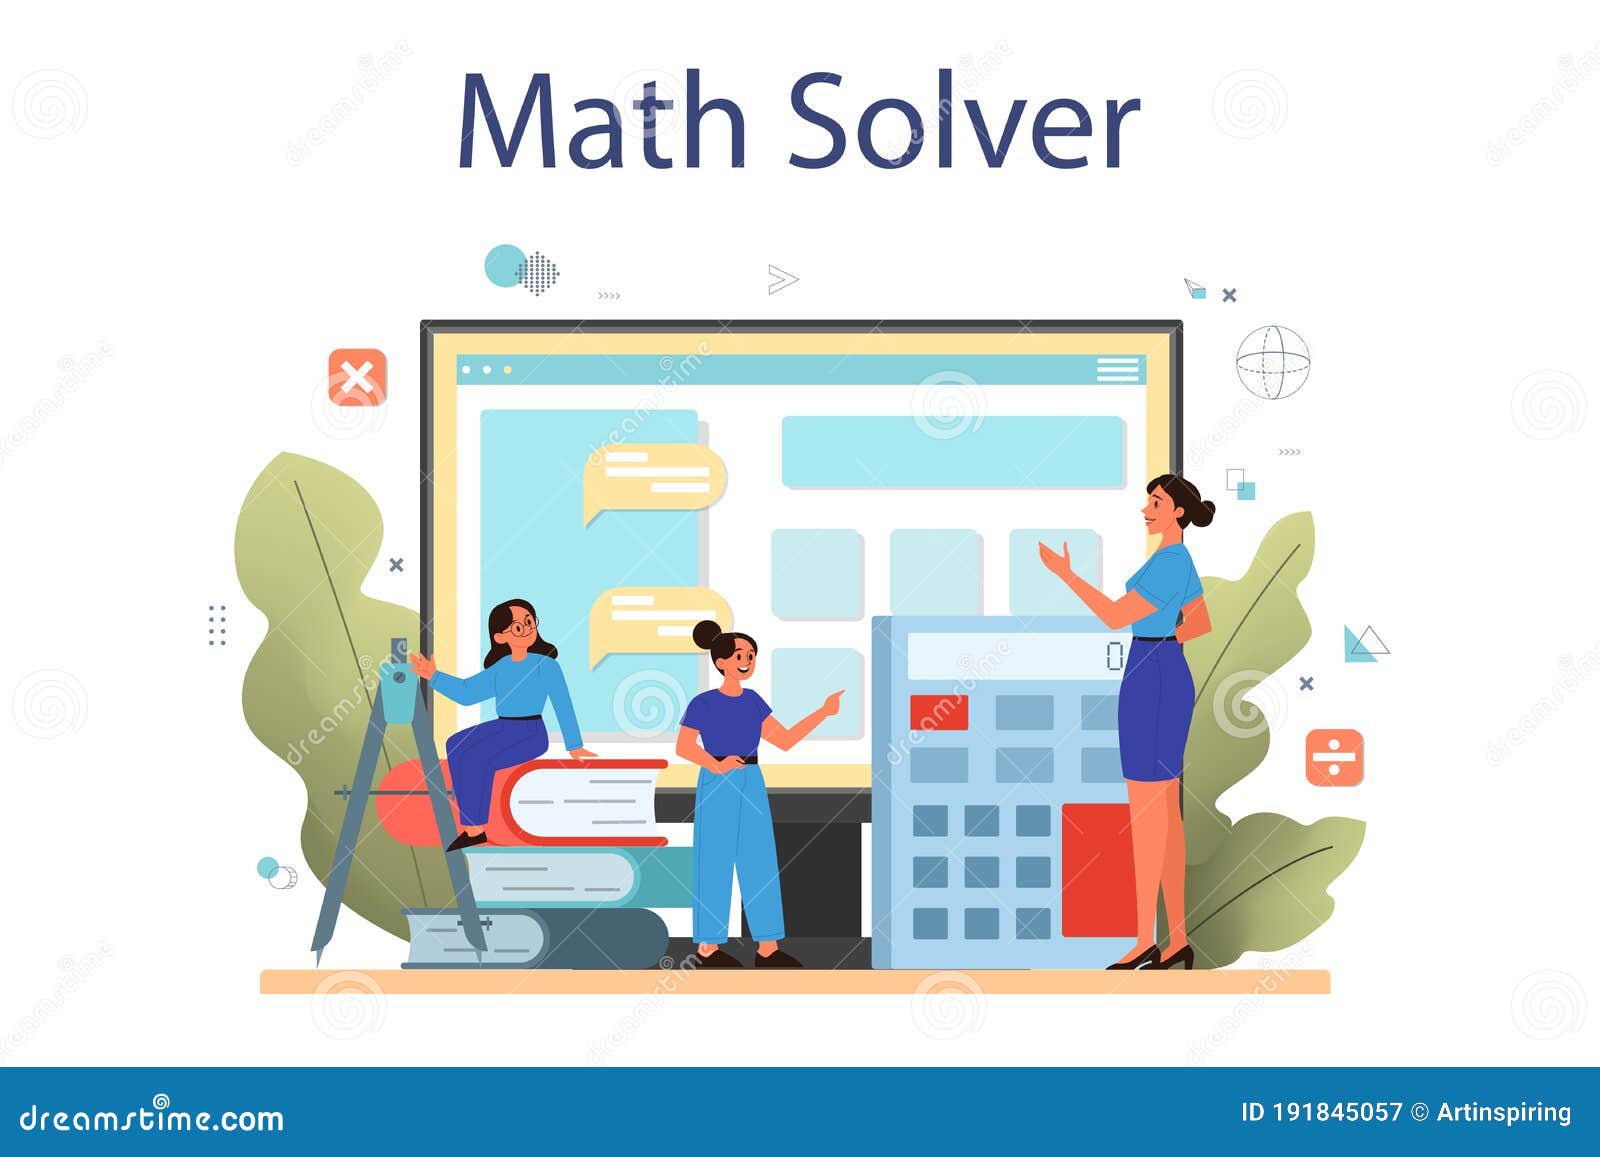 Math solver online